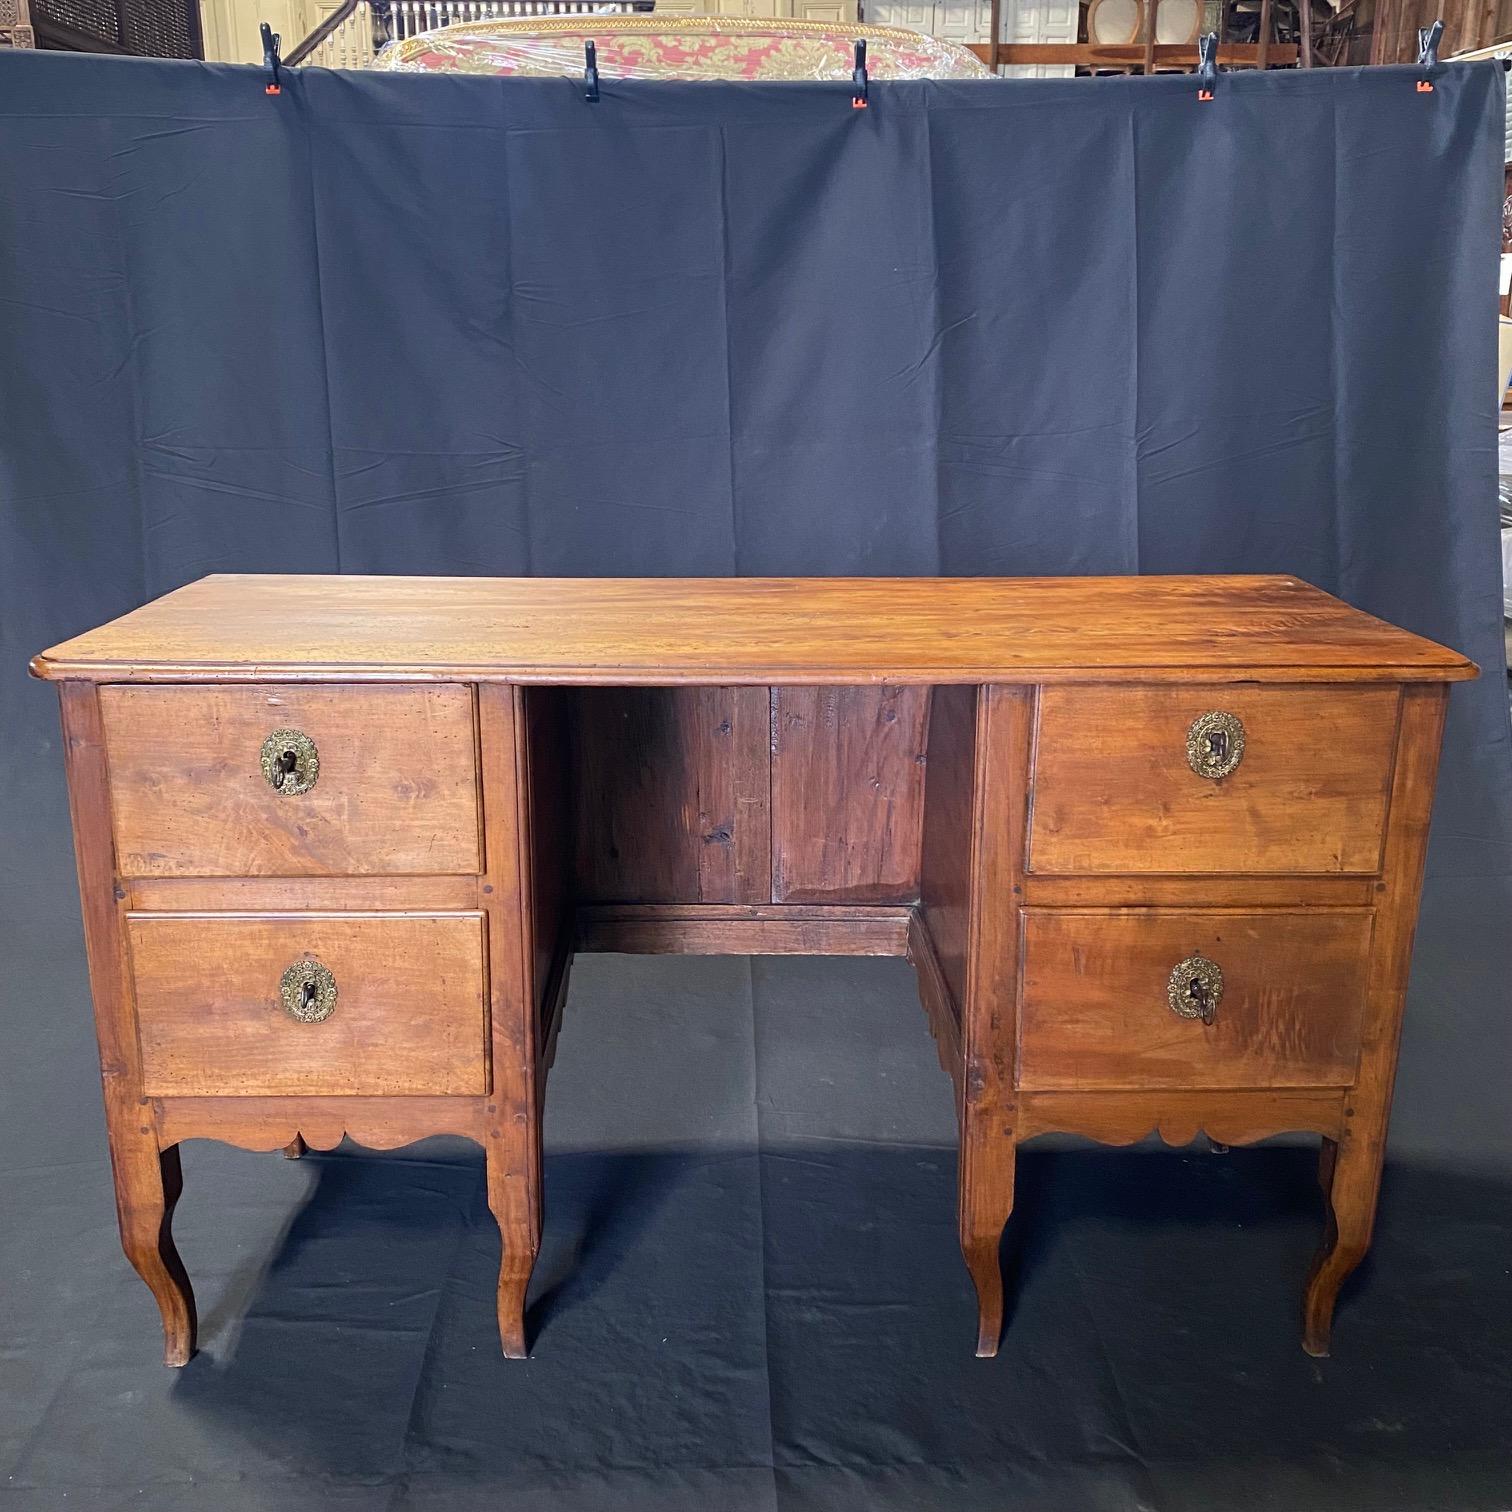 Dieser Schreibtisch im Empire-Stil aus dem 18. Jahrhundert, der in der Nähe von Paris gefunden wurde, wurde aufgrund seiner tadellosen Qualität und seines Stils erworben. Das überwiegend aus Nussbaumholz gefertigte Möbelstück mit seinen empirischen